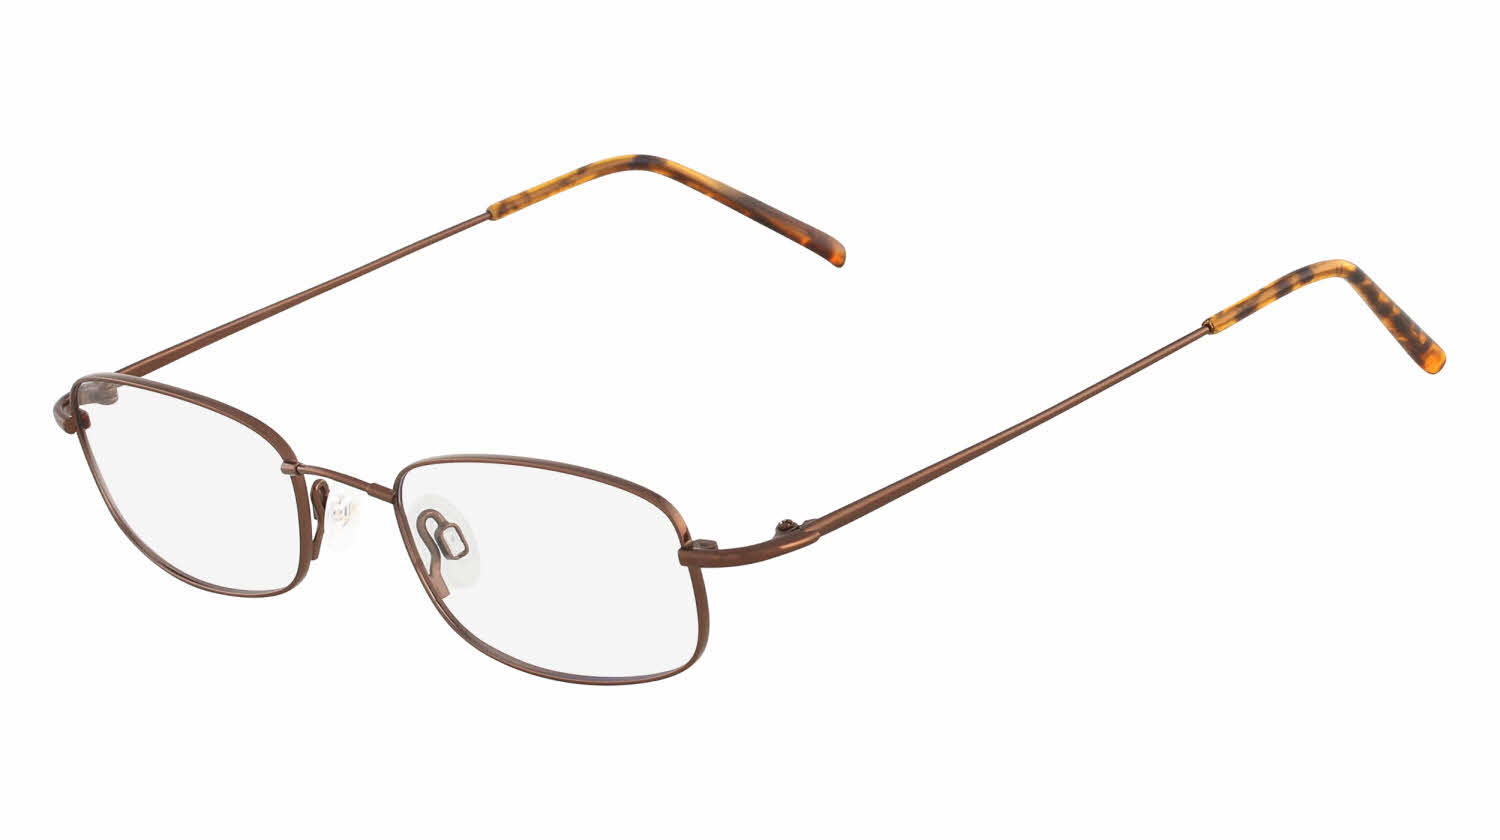 Flexon Flexon 603 Men's Eyeglasses In Brown